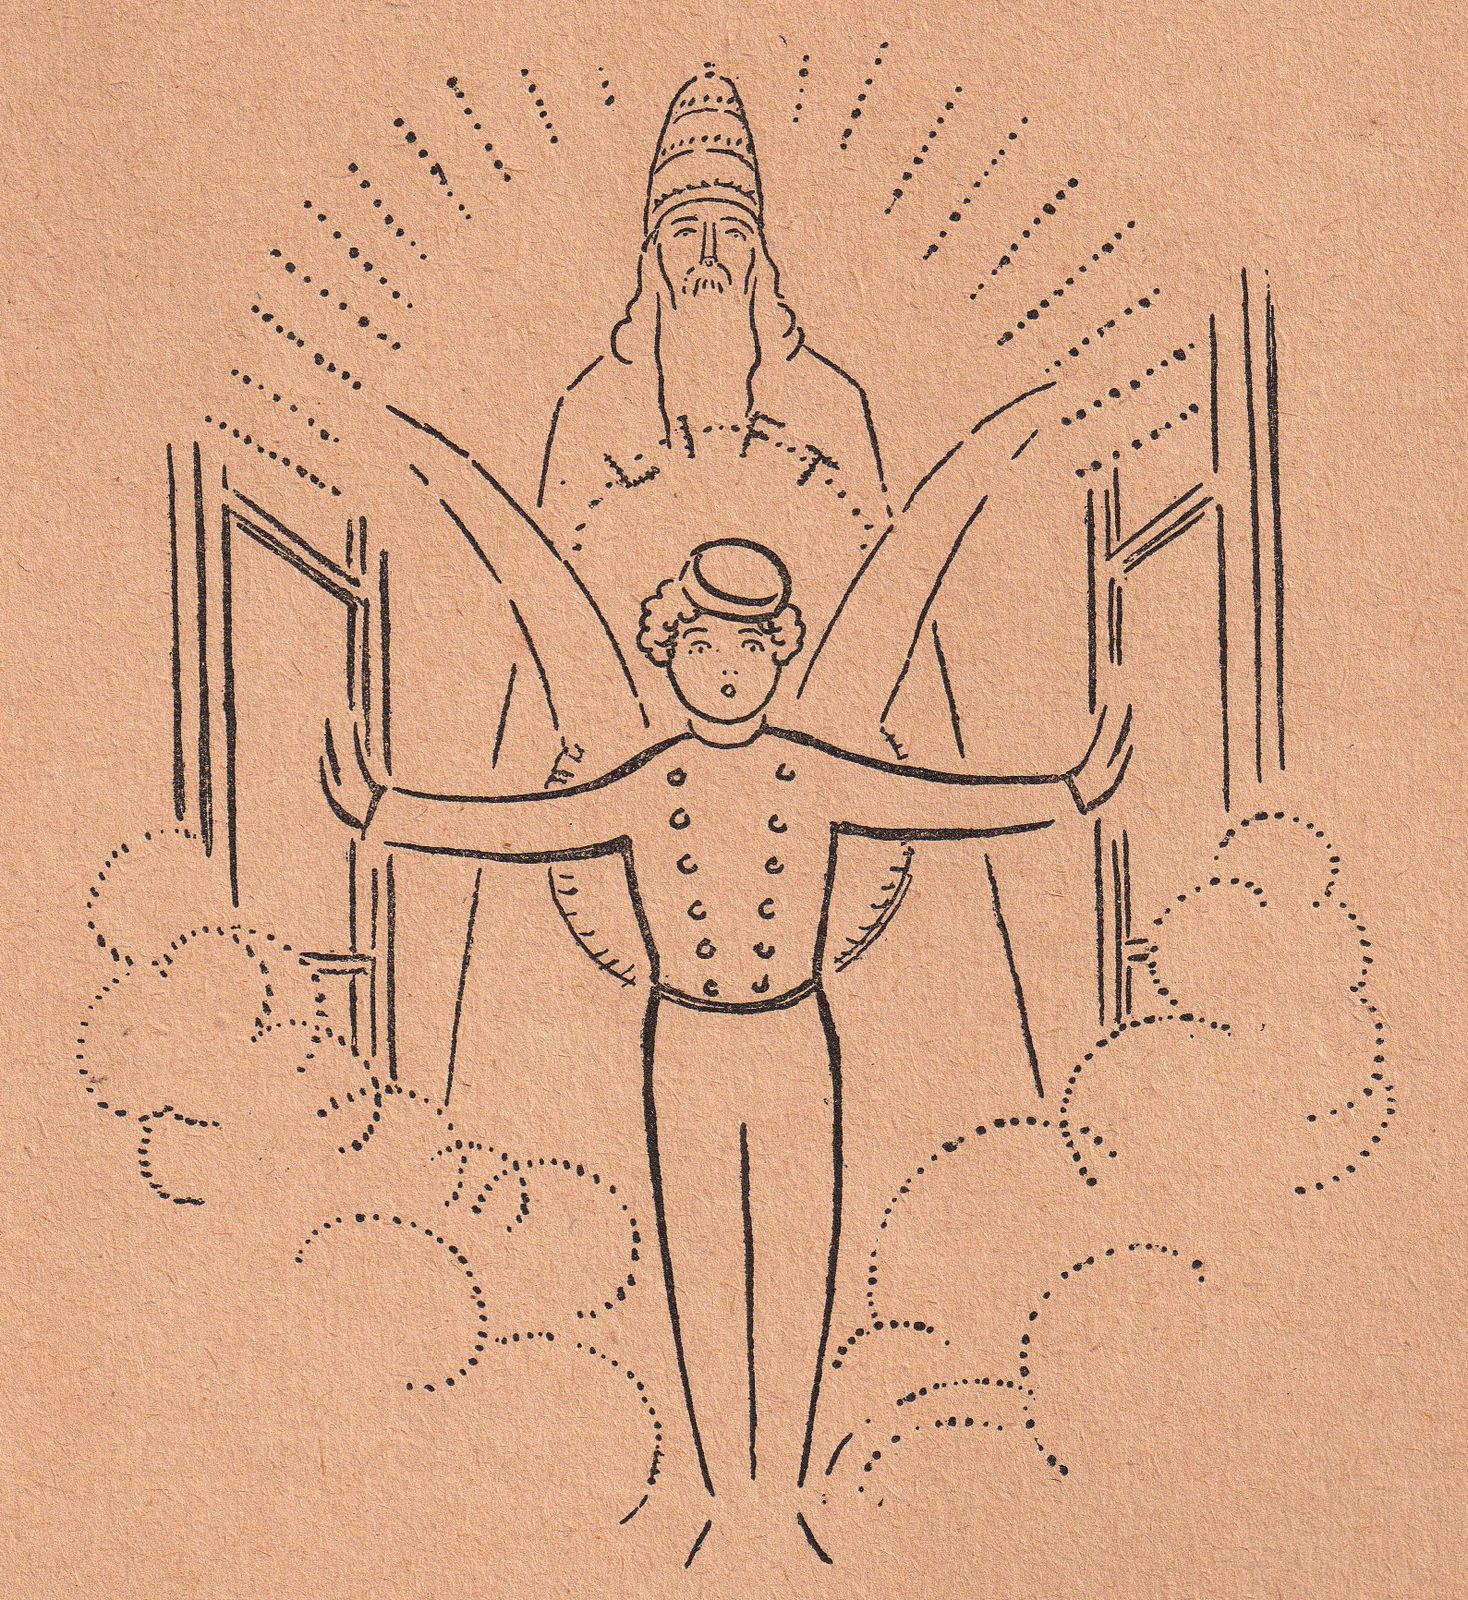 Maurice Venoise "Les Mystères du Praxinoscope" (Boivin et Cie éditeur - 1931) : C'était un ange puisqu'il avait des ailes, mais un ange vêtu en groom bleu ; un ange puisqu'il possédait aussi une auréole, mais à demi-formée par les lettres du mot "Lift".